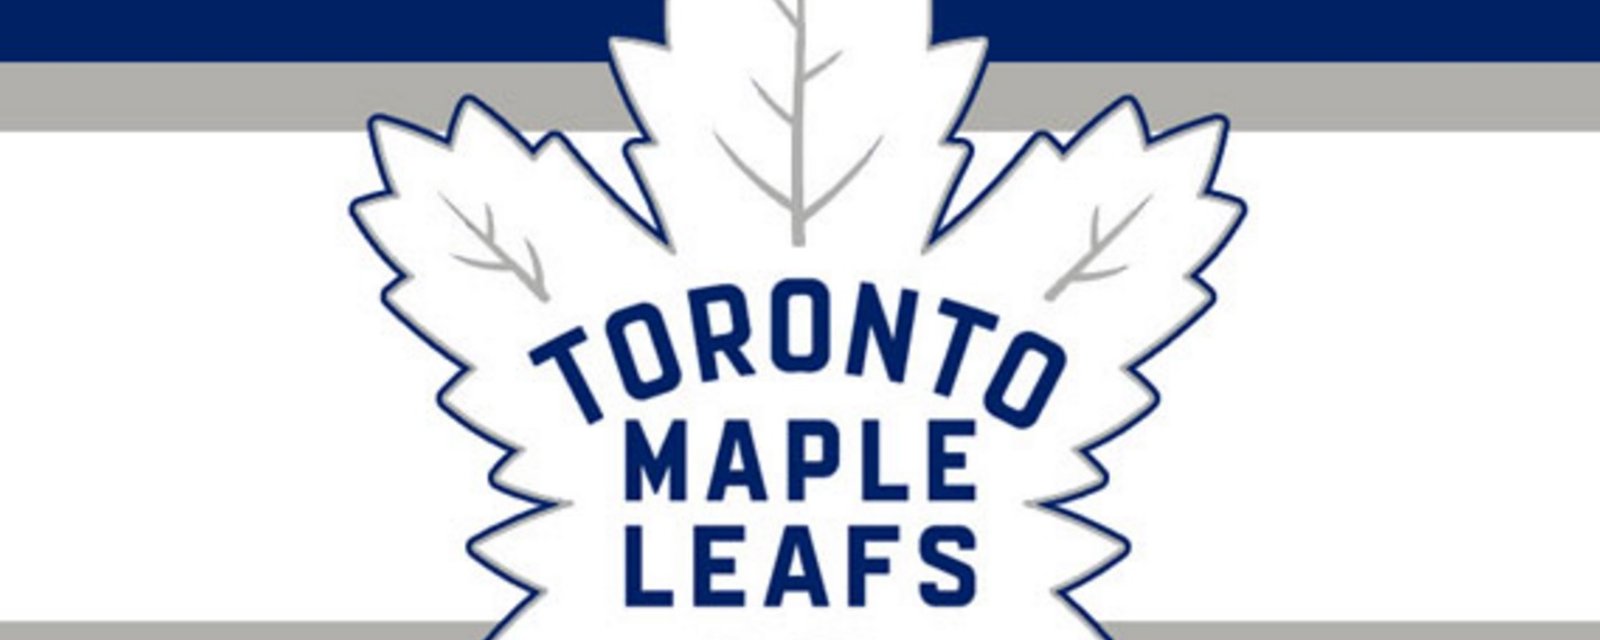 Breaking: Leafs centennial jersey has been leaked!